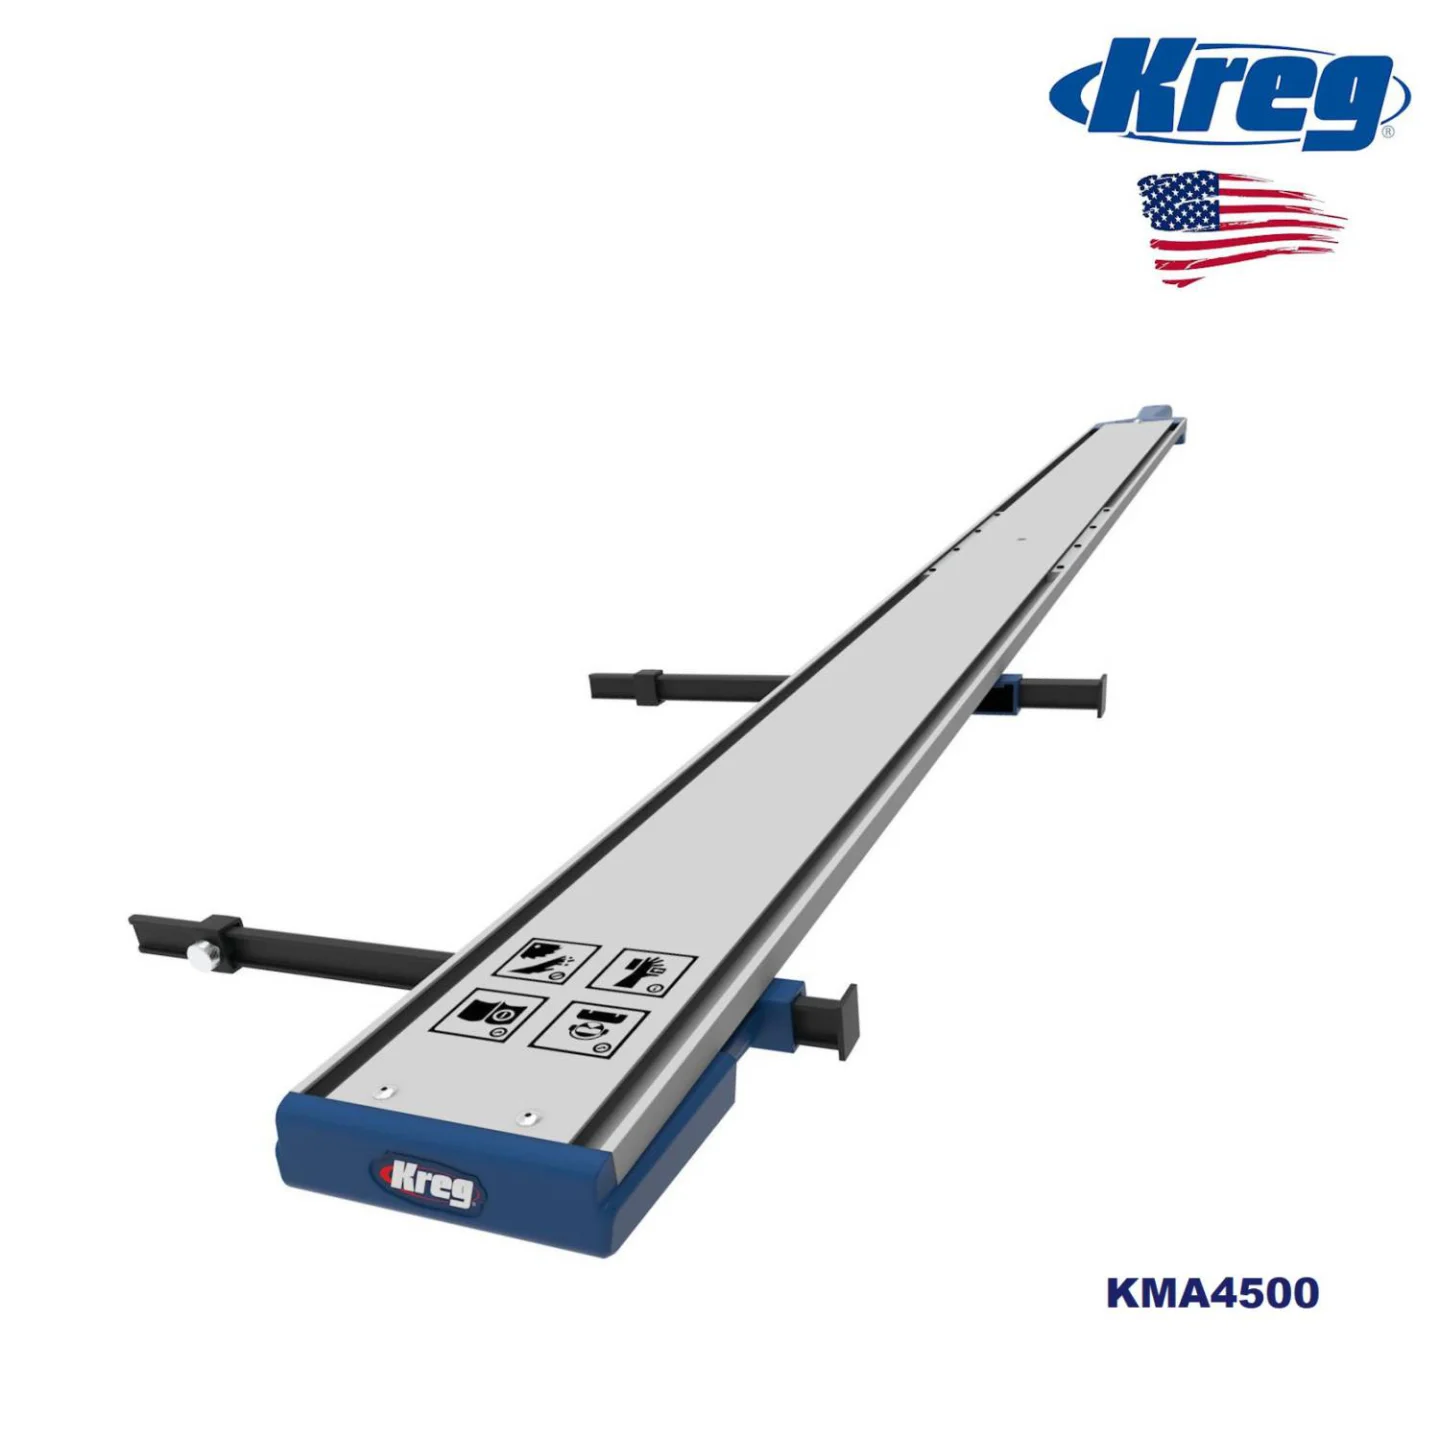 Kreg-Straight-Edge-1219-mm-KMA4500.